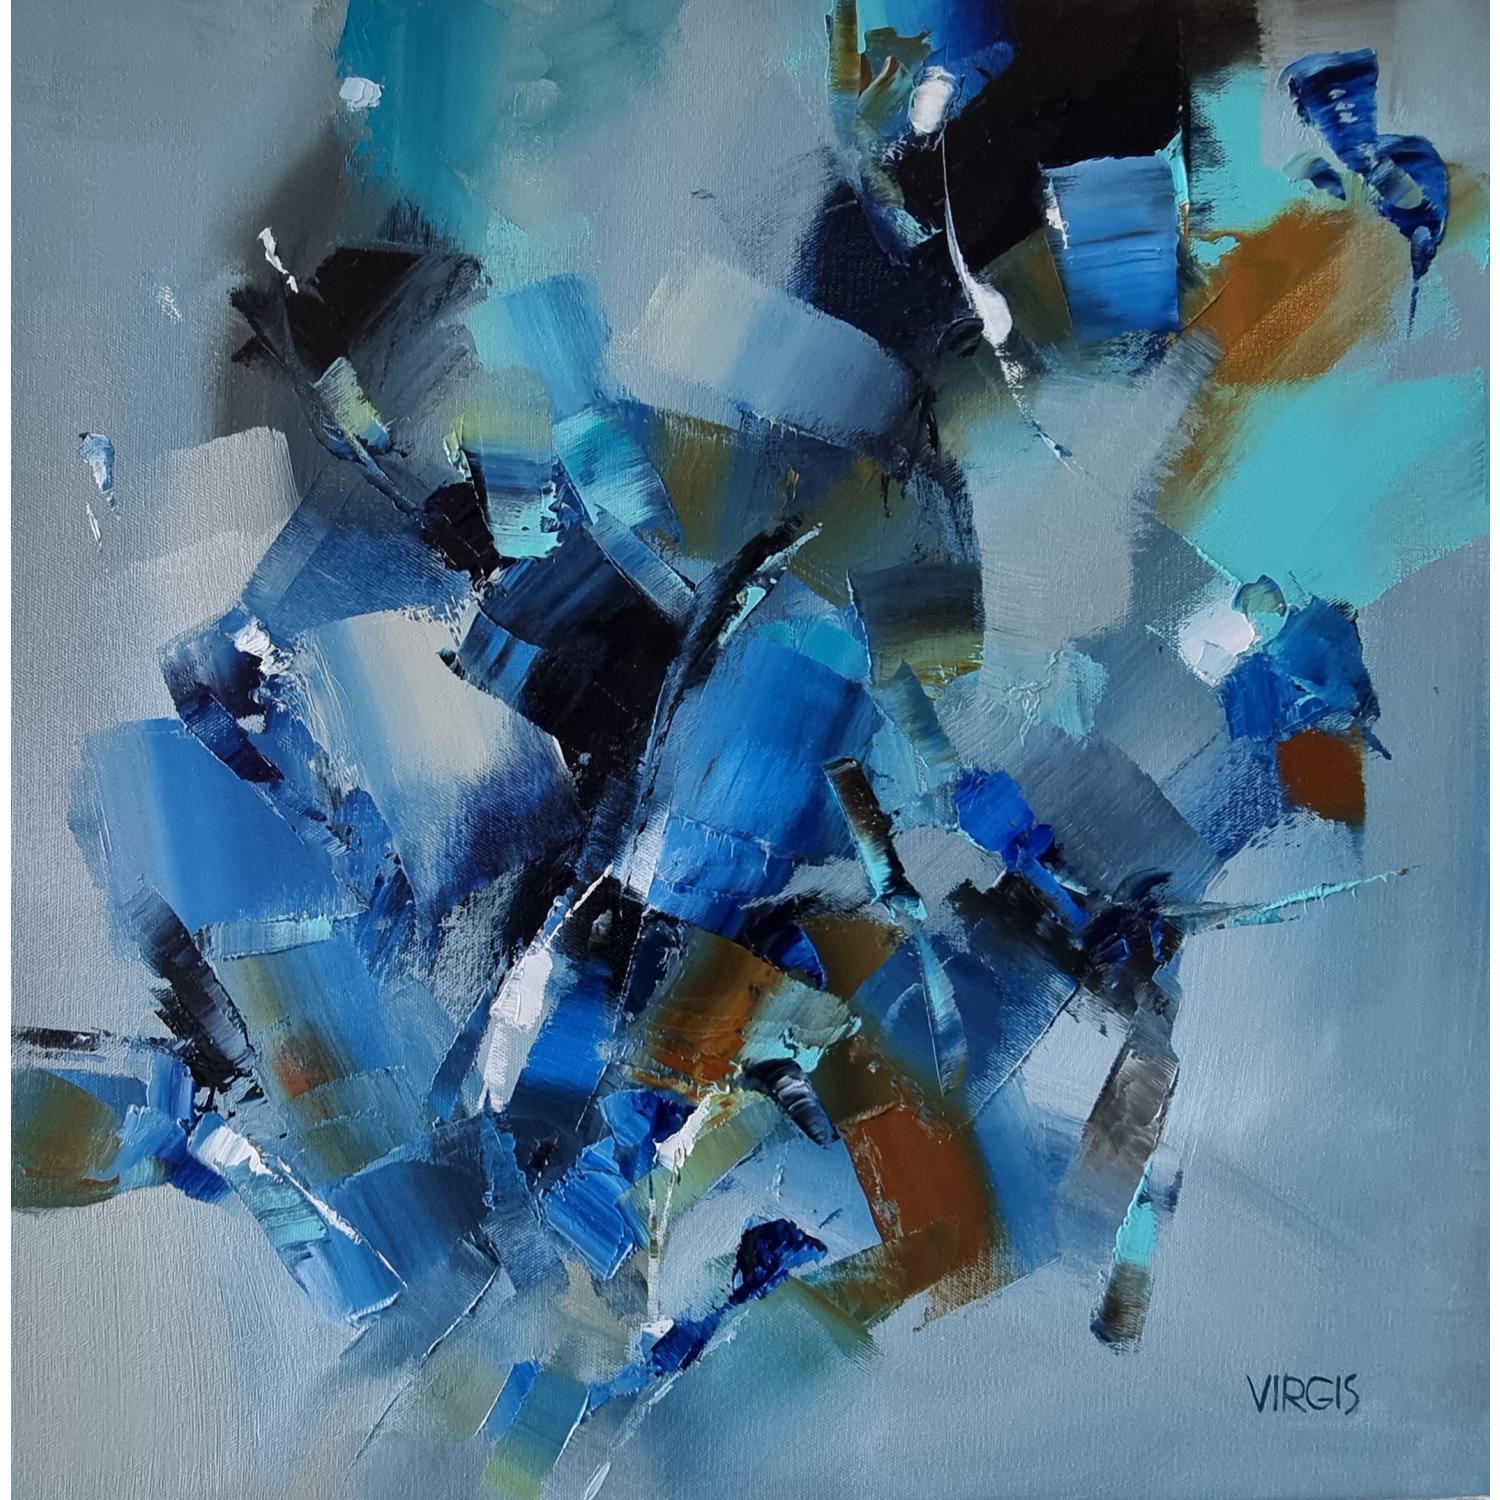 Acrylique sur toile châssis 50x50  Peinture abstraite, Peinture abstraite  bleu, Tableau peinture abstrait